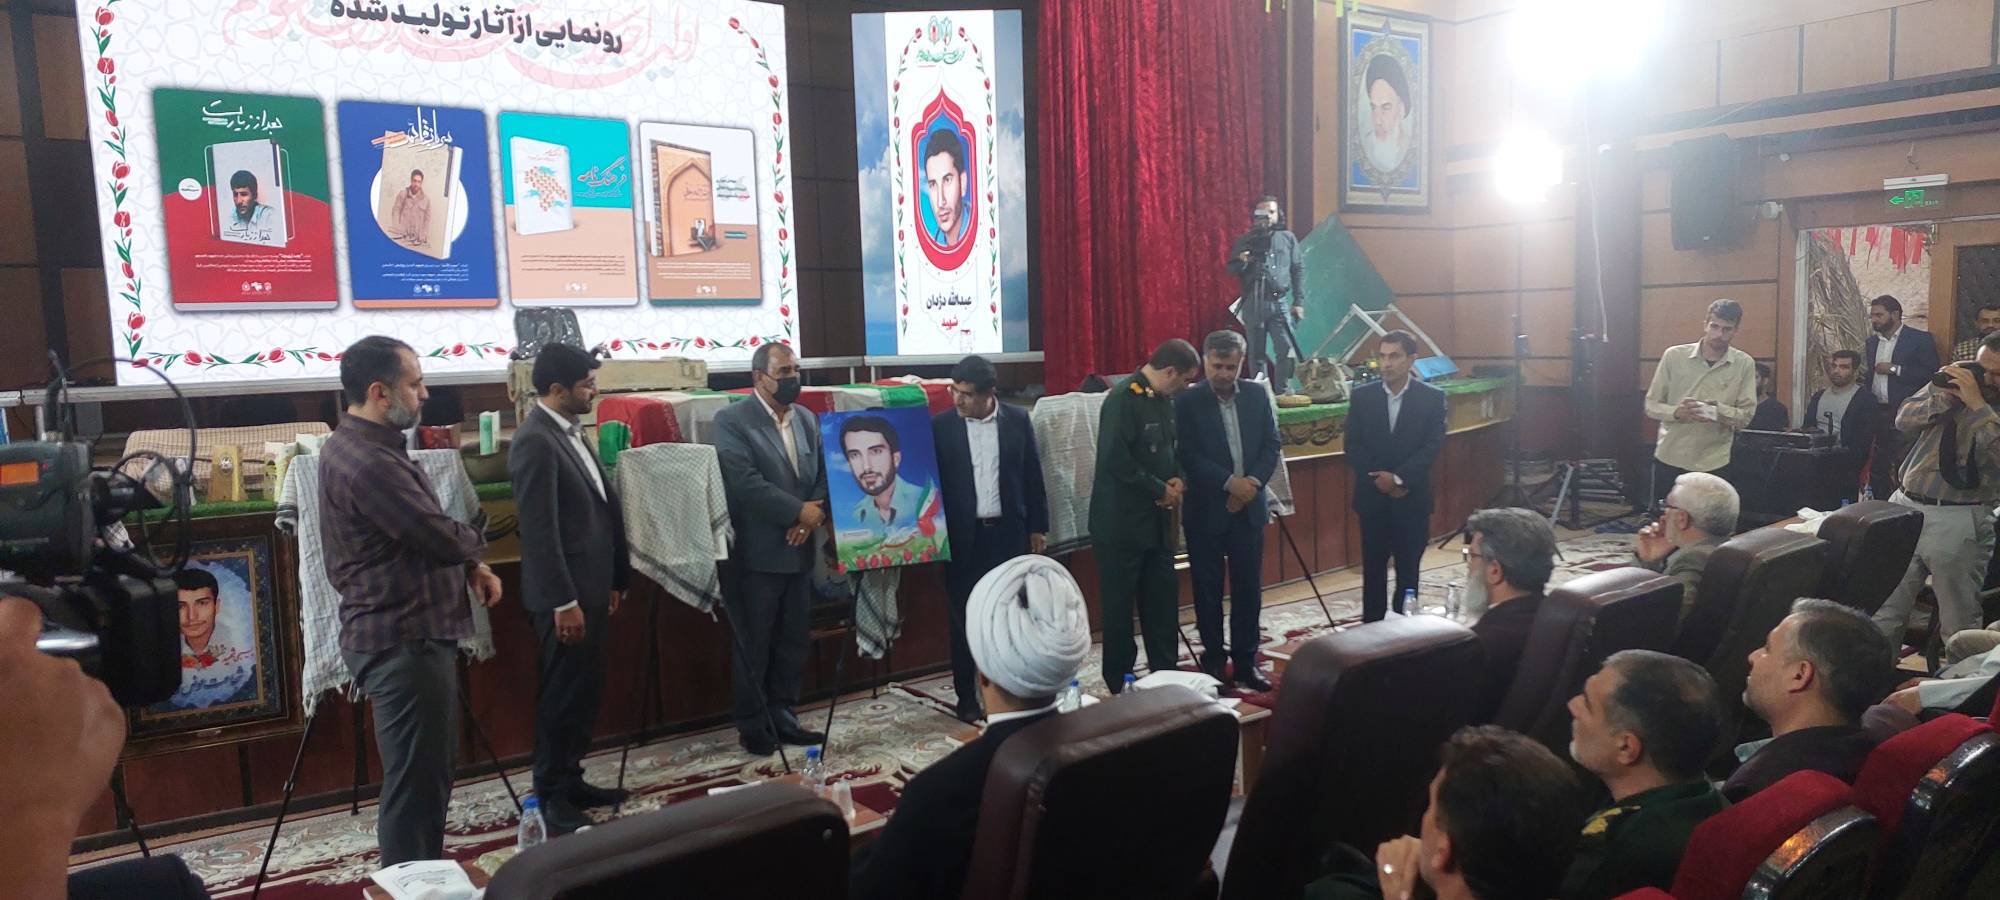 برگزاری نخستین اجلاسیه شهدای دانشجوی تربیت معلم استان